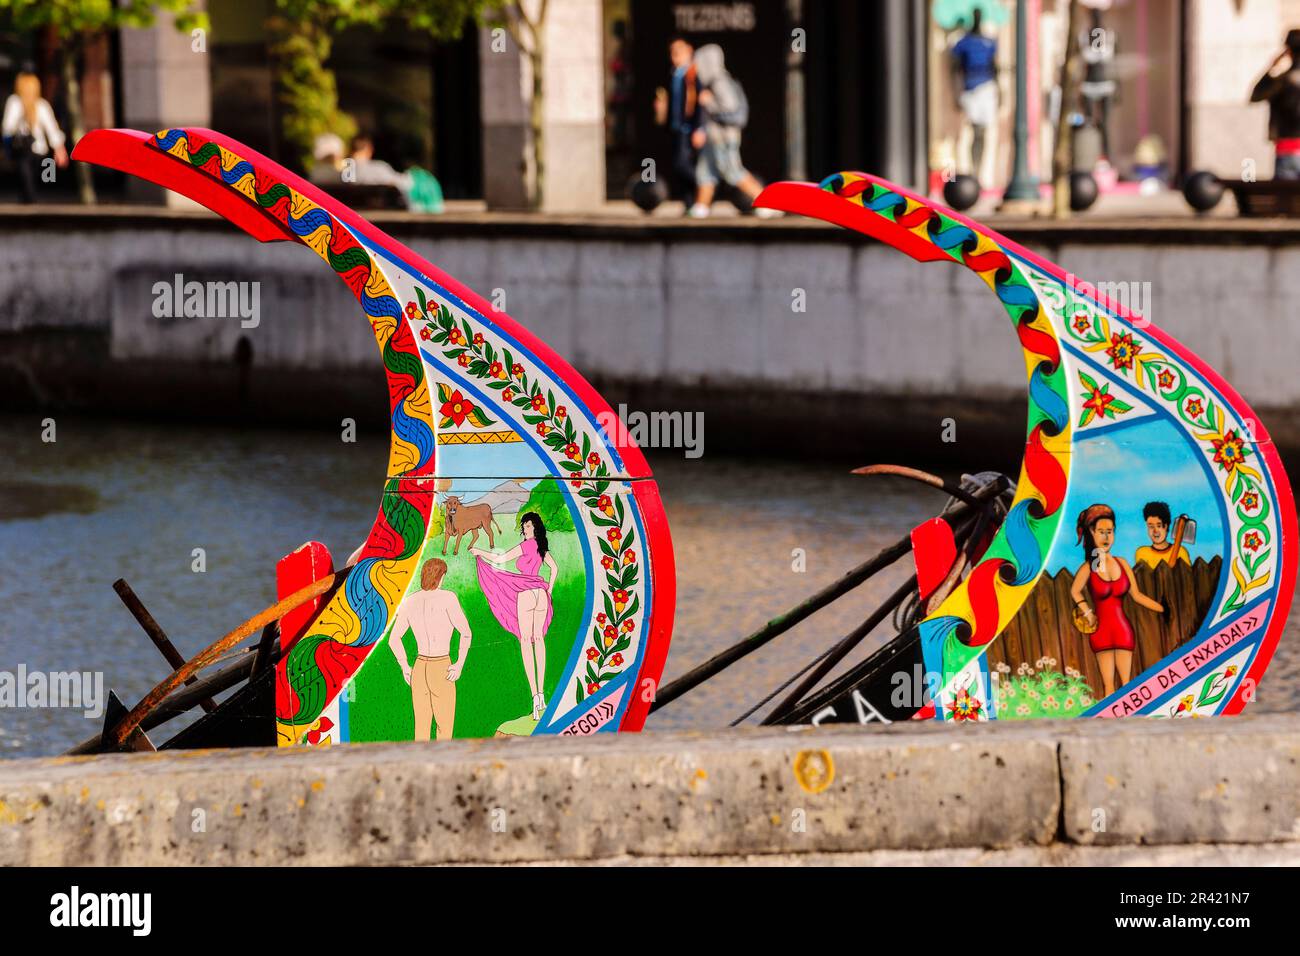 proas de Moliceiros decoradas, canal central,Aveiro, Beira Litoral, Portugal, europa. Stock Photo